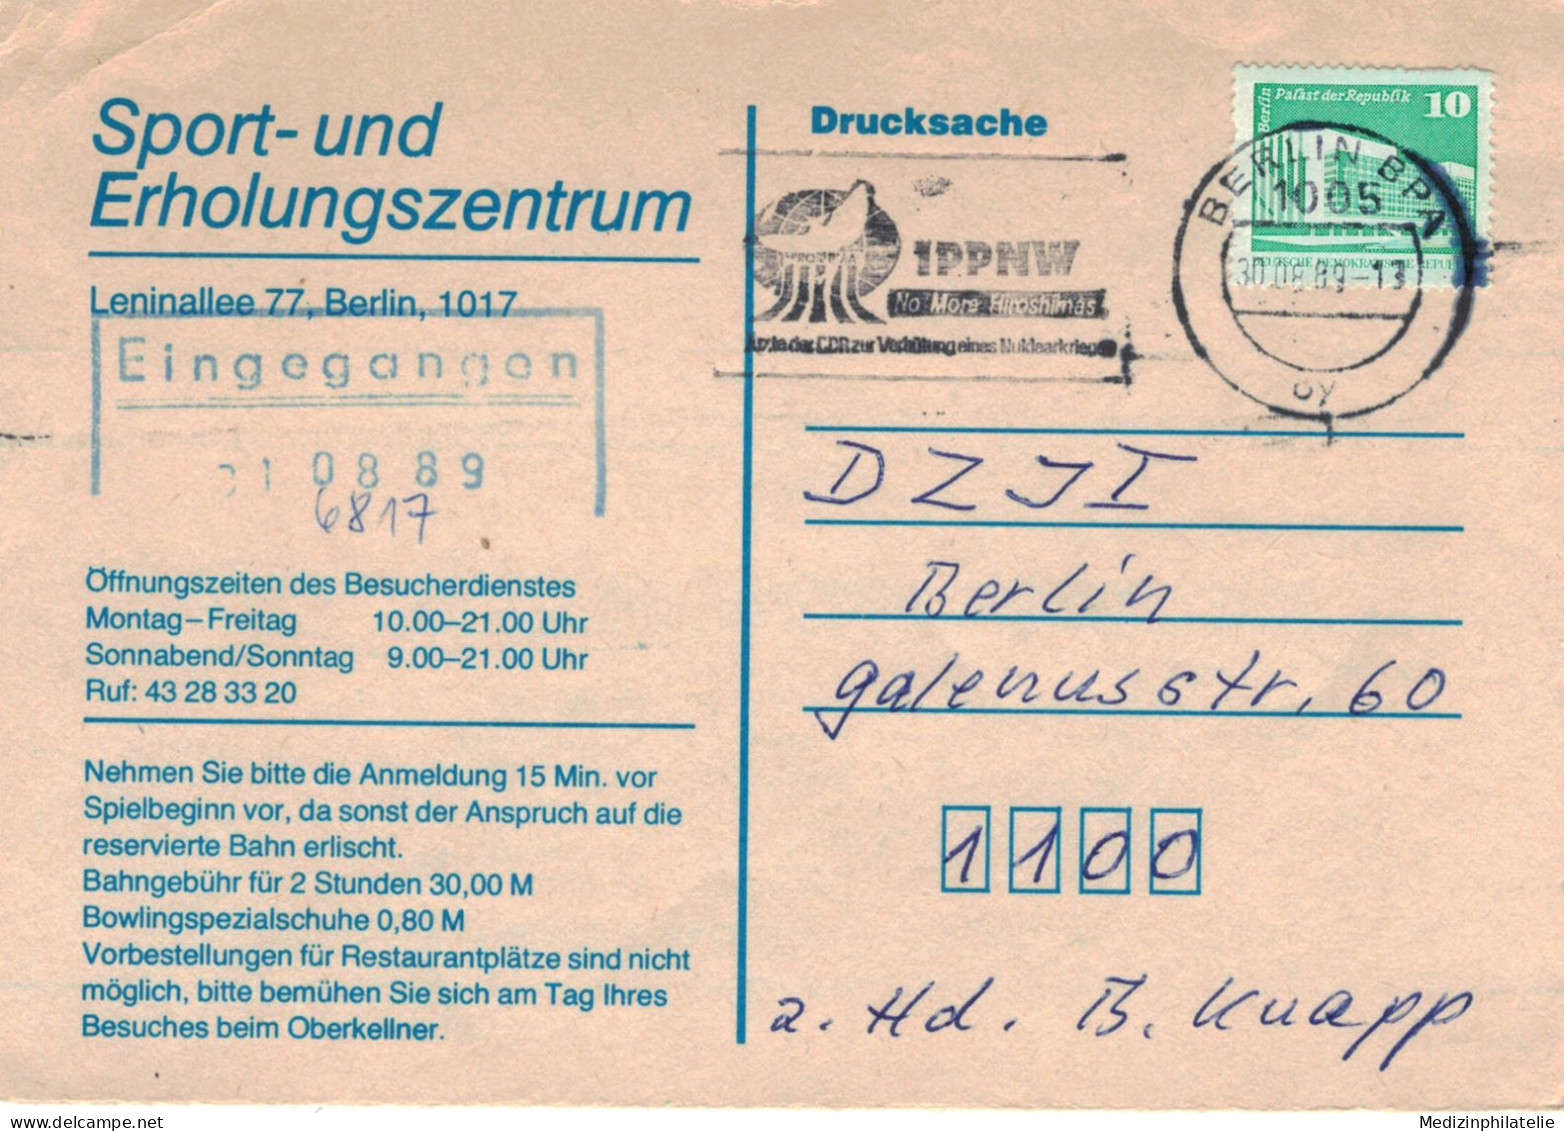 IPPNW Ärzte Der DDR Zur Verhütung Eines Nuklearkrieges Berlin 1989 - Sport-Erholungszentrum Absage Bowling-Bahn - Atom